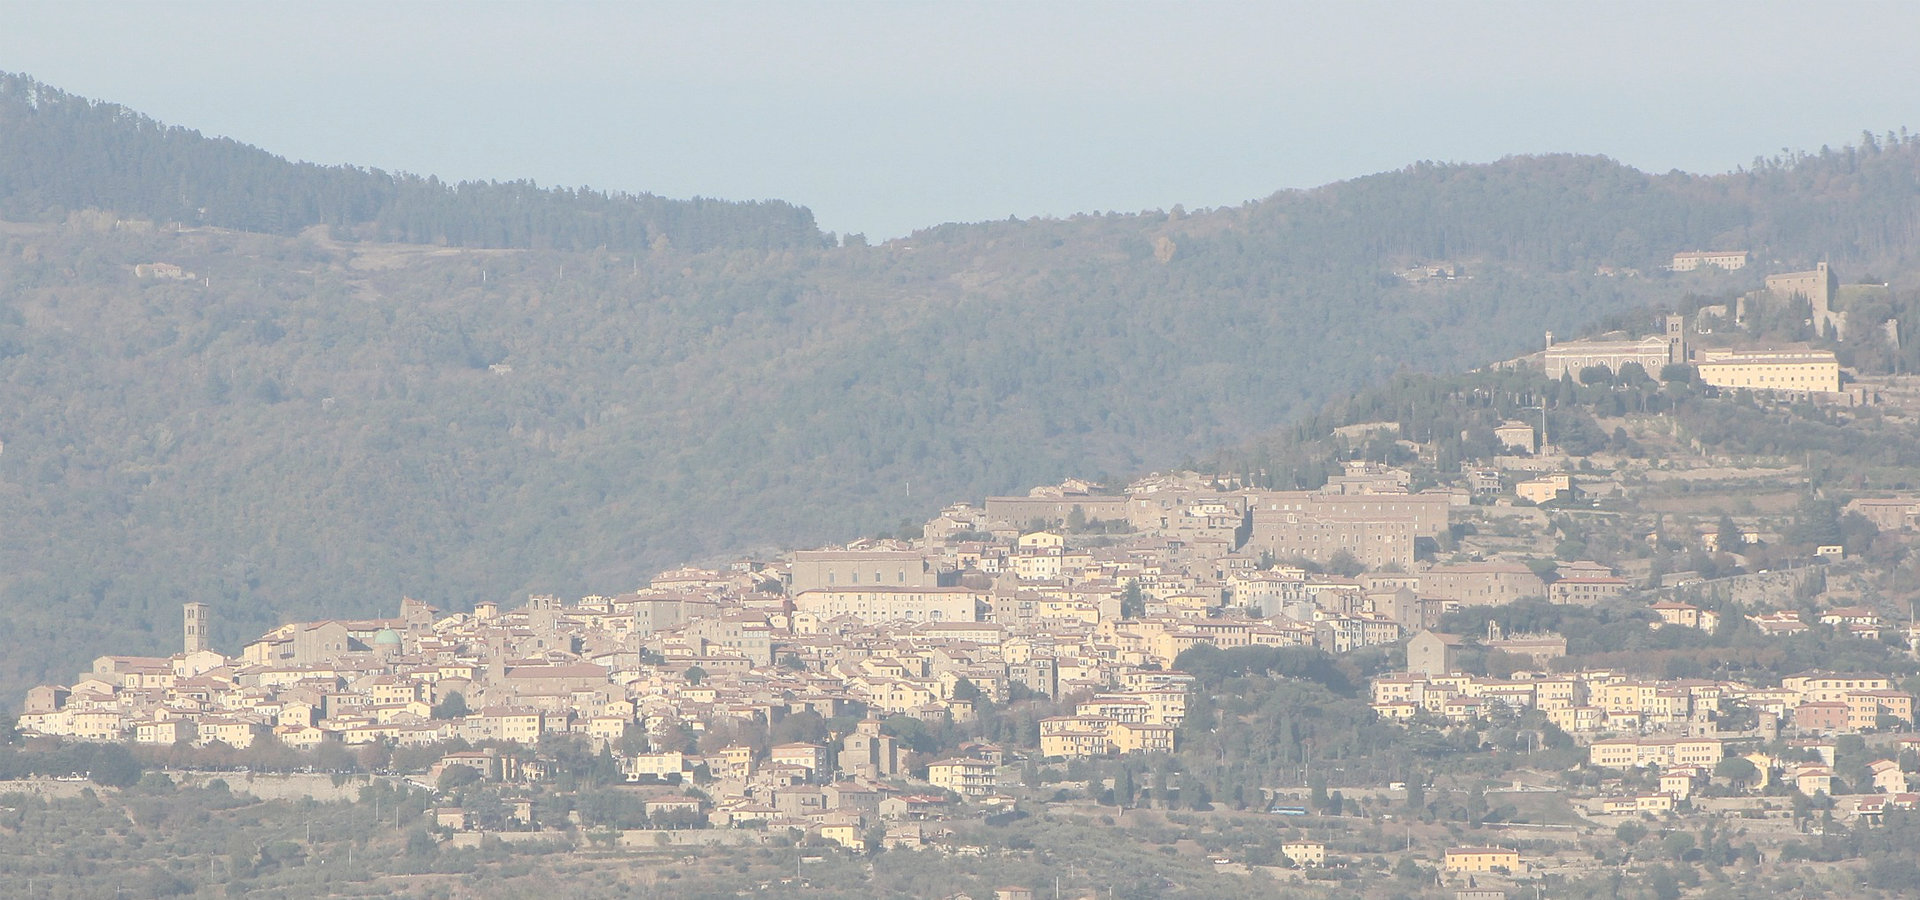 <b>Cortona, Province of Arezzo, Tuscany Region, Italy</b>